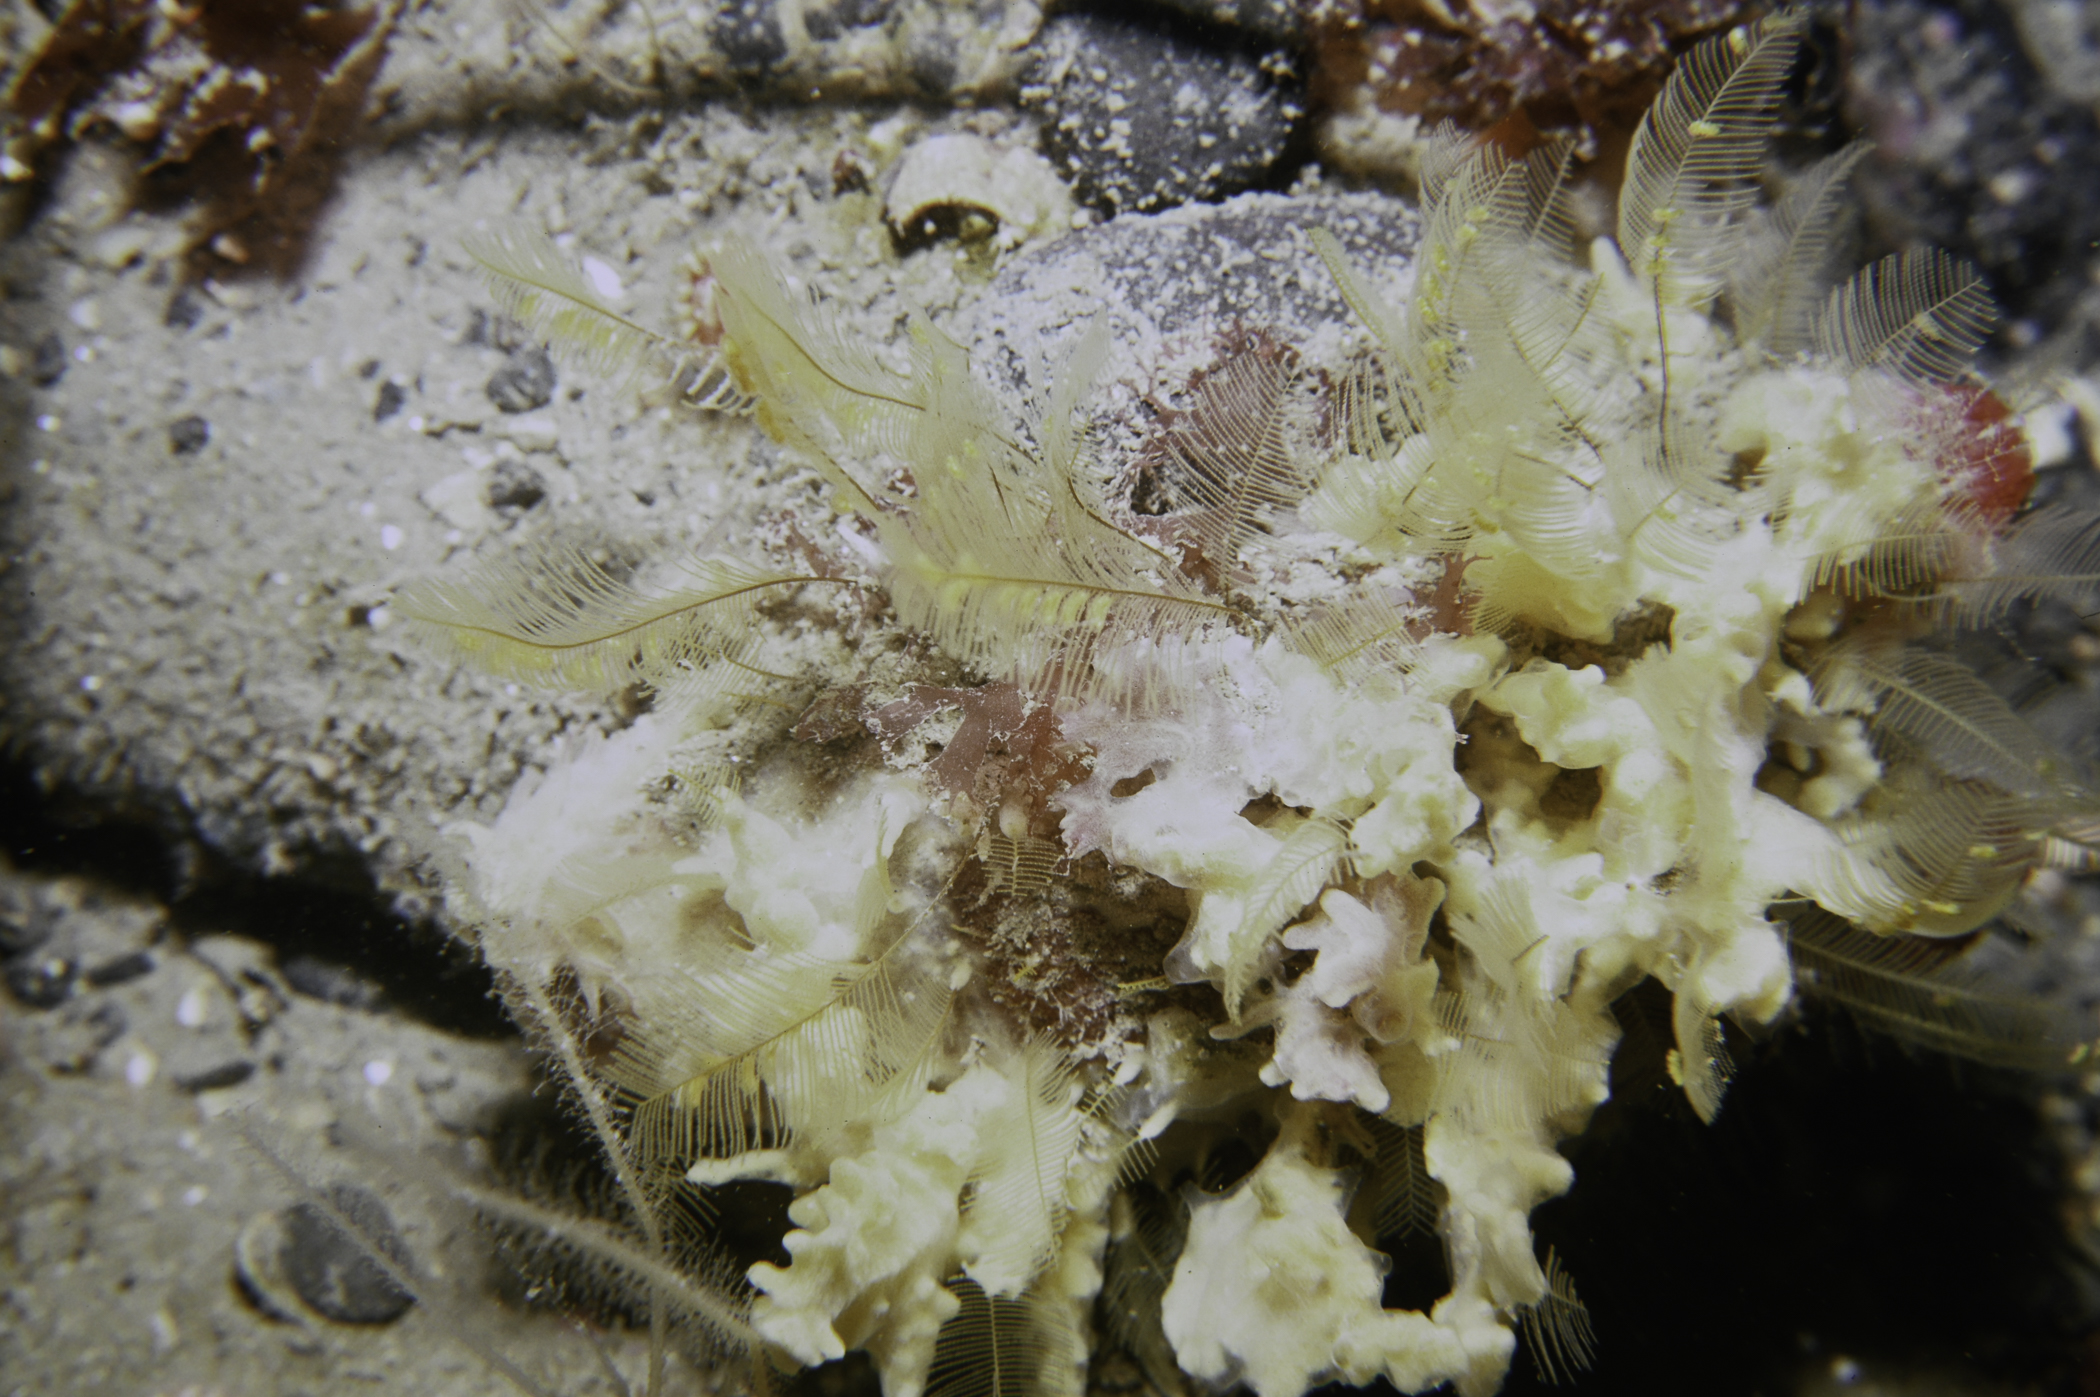 Iophon hyndmani, Aglaophenia tubulifera. Site: W Church Bay, Rathlin Island. 